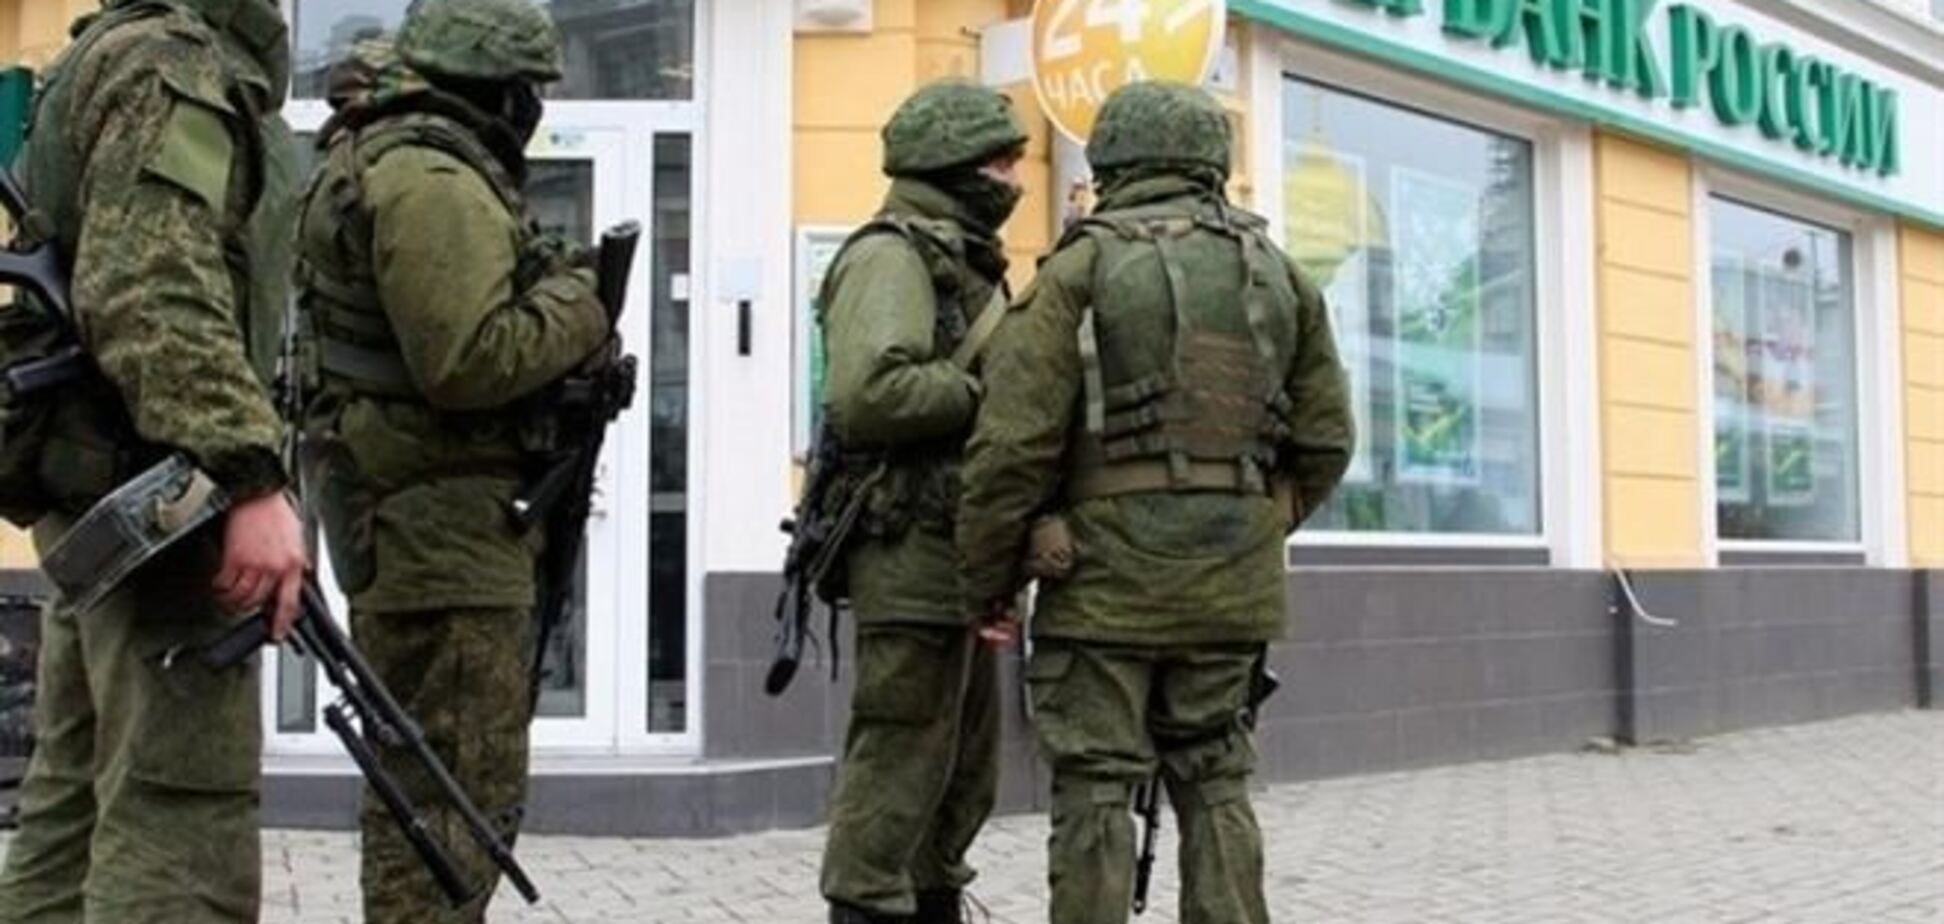 Два украинских офицера освобождены из российского плена - Минобороны